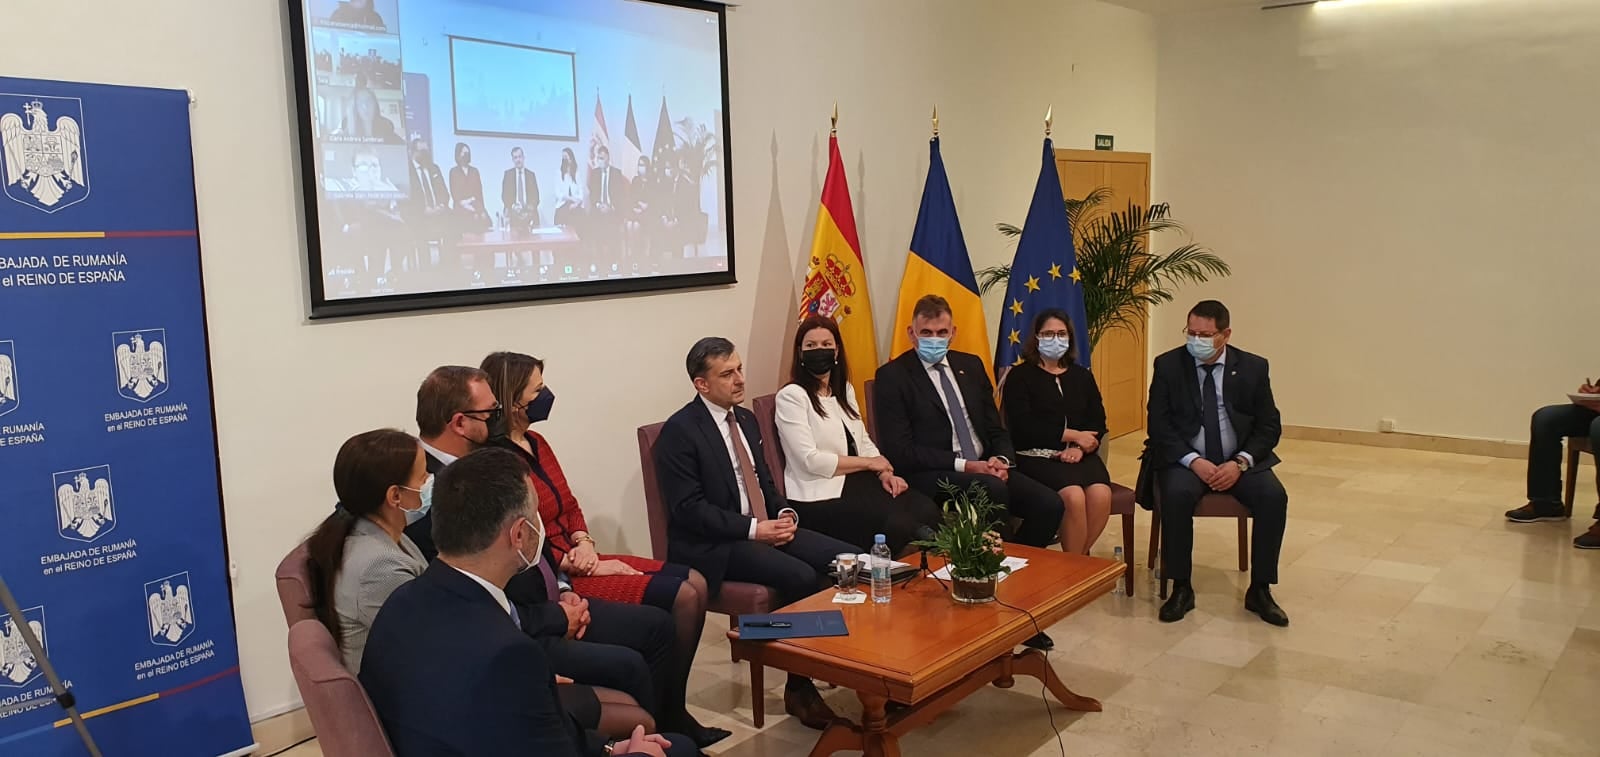 Prima reuniune a ambasadorului României cu reprezentanții comunității românești din Spania 2